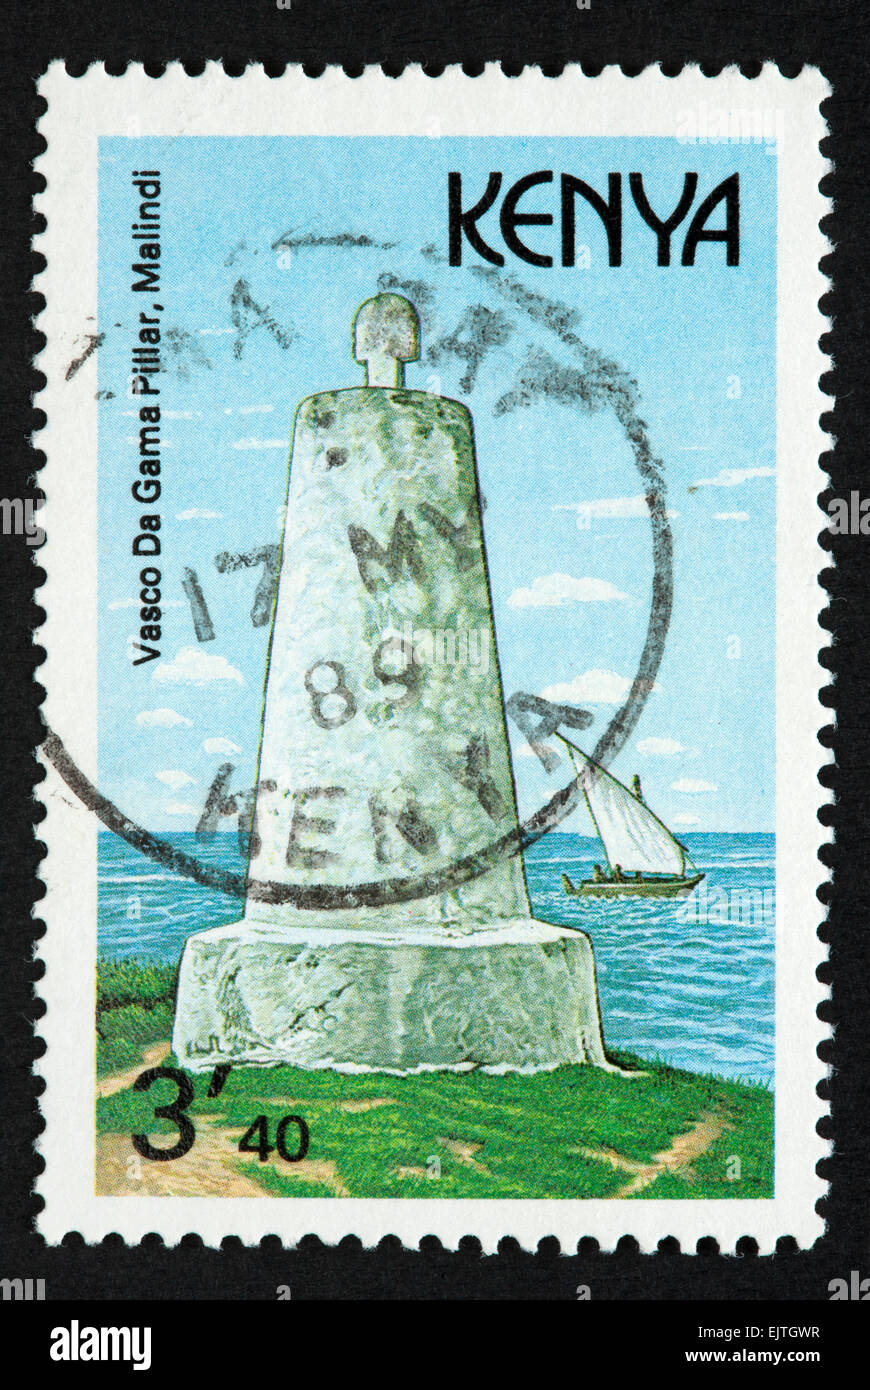 Kenyan postage stamp Stock Photo